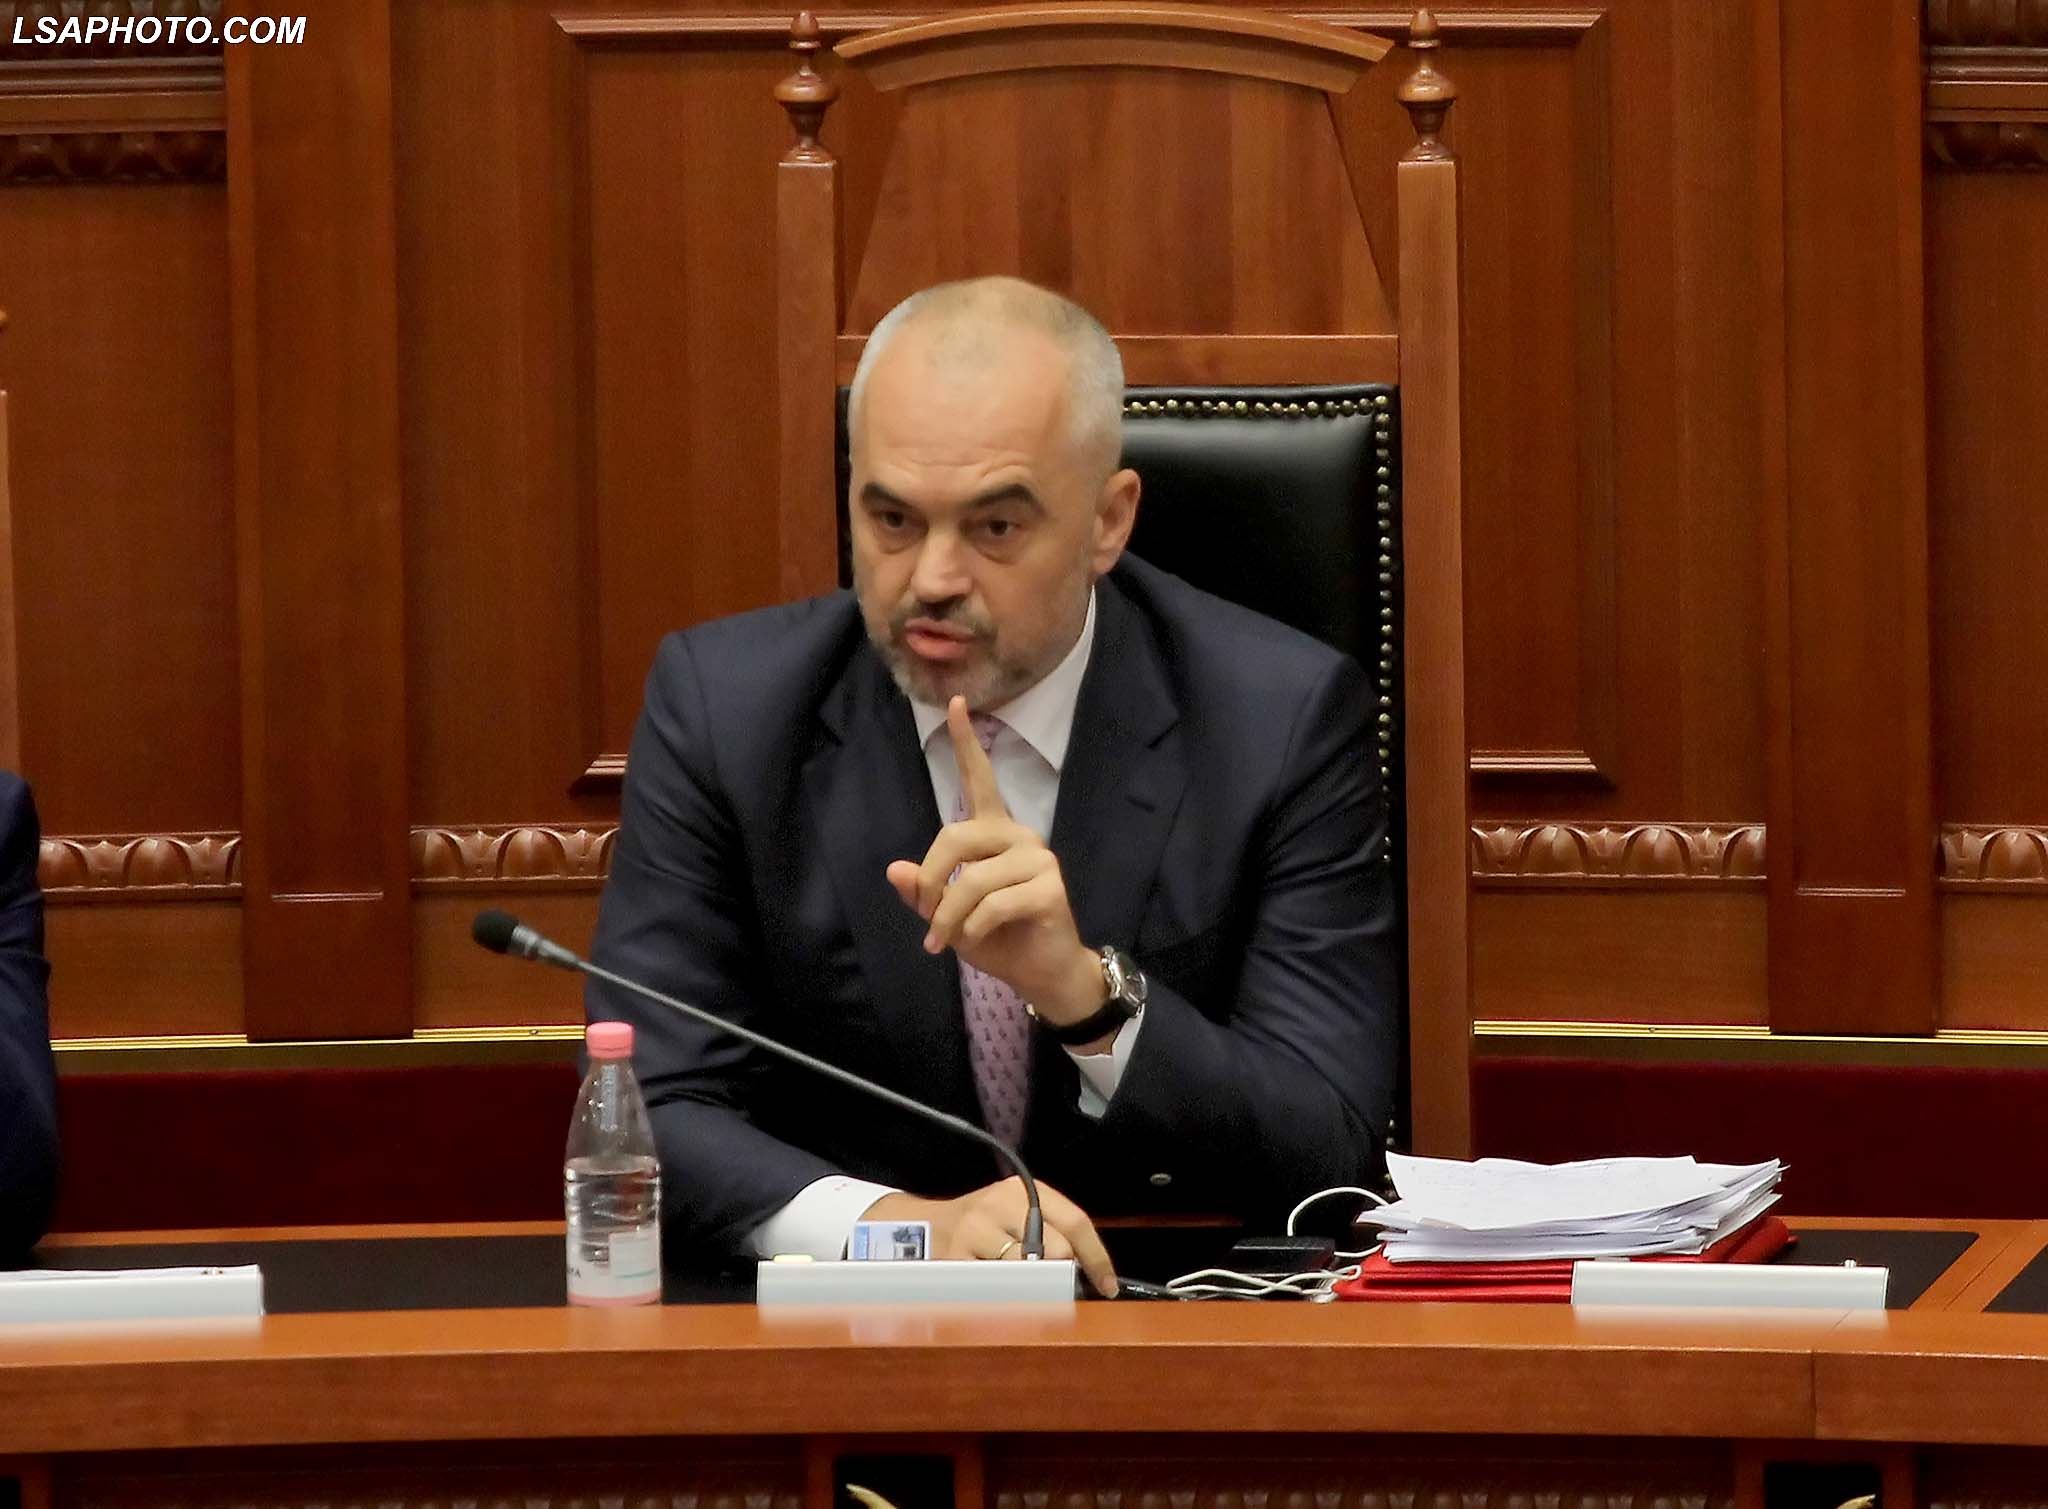 Kryeministri, Edi Rama, duke folur gjate seances se fundit parlamentare te sesionit te 6 te Kuvendit te Shqiperise, ku ne rend te dites jane projektligjet per Reformen ne Drejtesi./r/n/r/nPrime Minister Edi Rama, speaks during a parliamentary session.